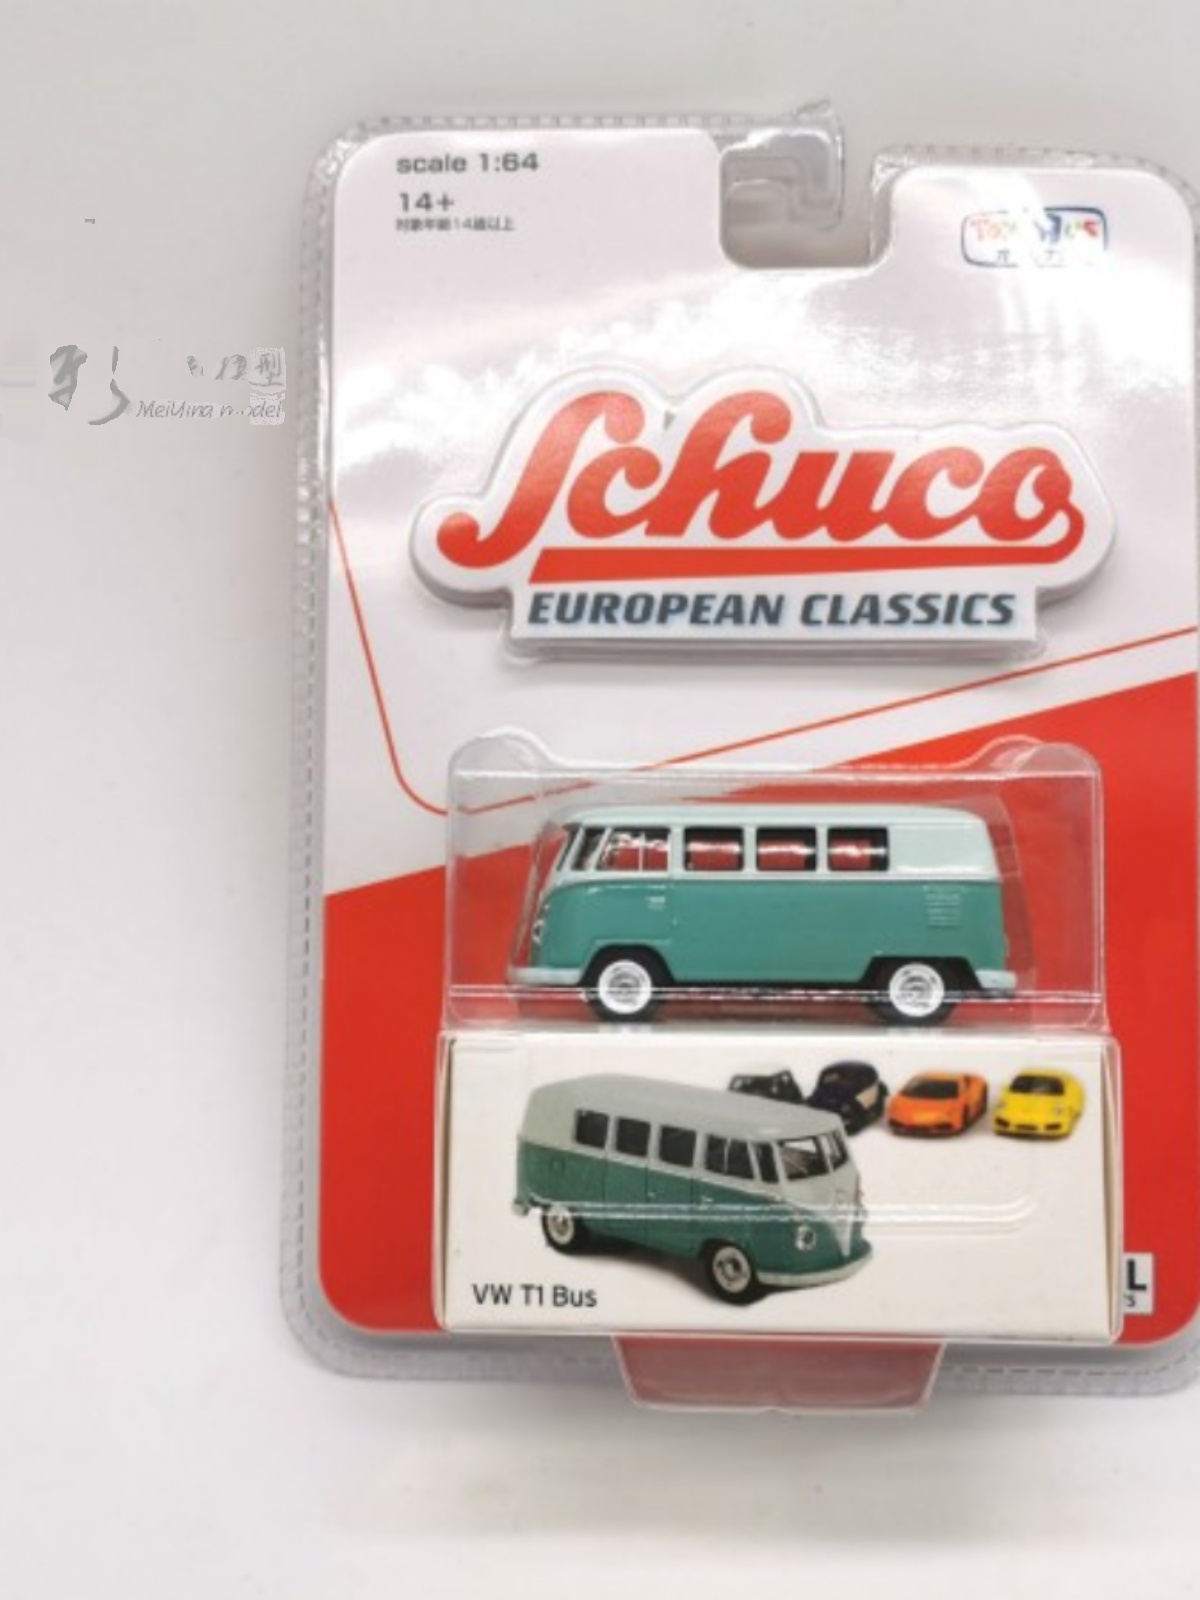 新Schuco 舒克 1:64 大众 VW T1公交巴士 玩具反斗城版合金汽车模